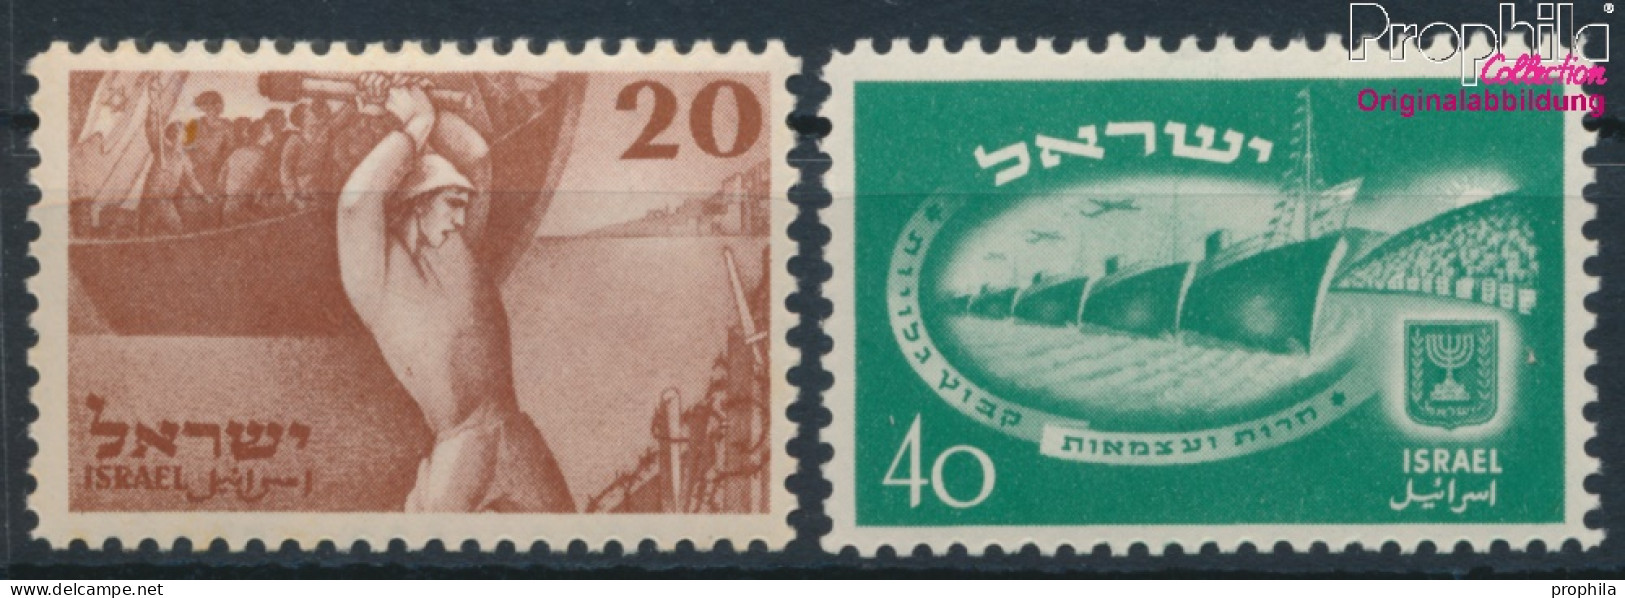 Israel 30-31 (kompl.Ausg.) Postfrisch 1950 Unabhängigkeit (10301377 - Neufs (sans Tabs)